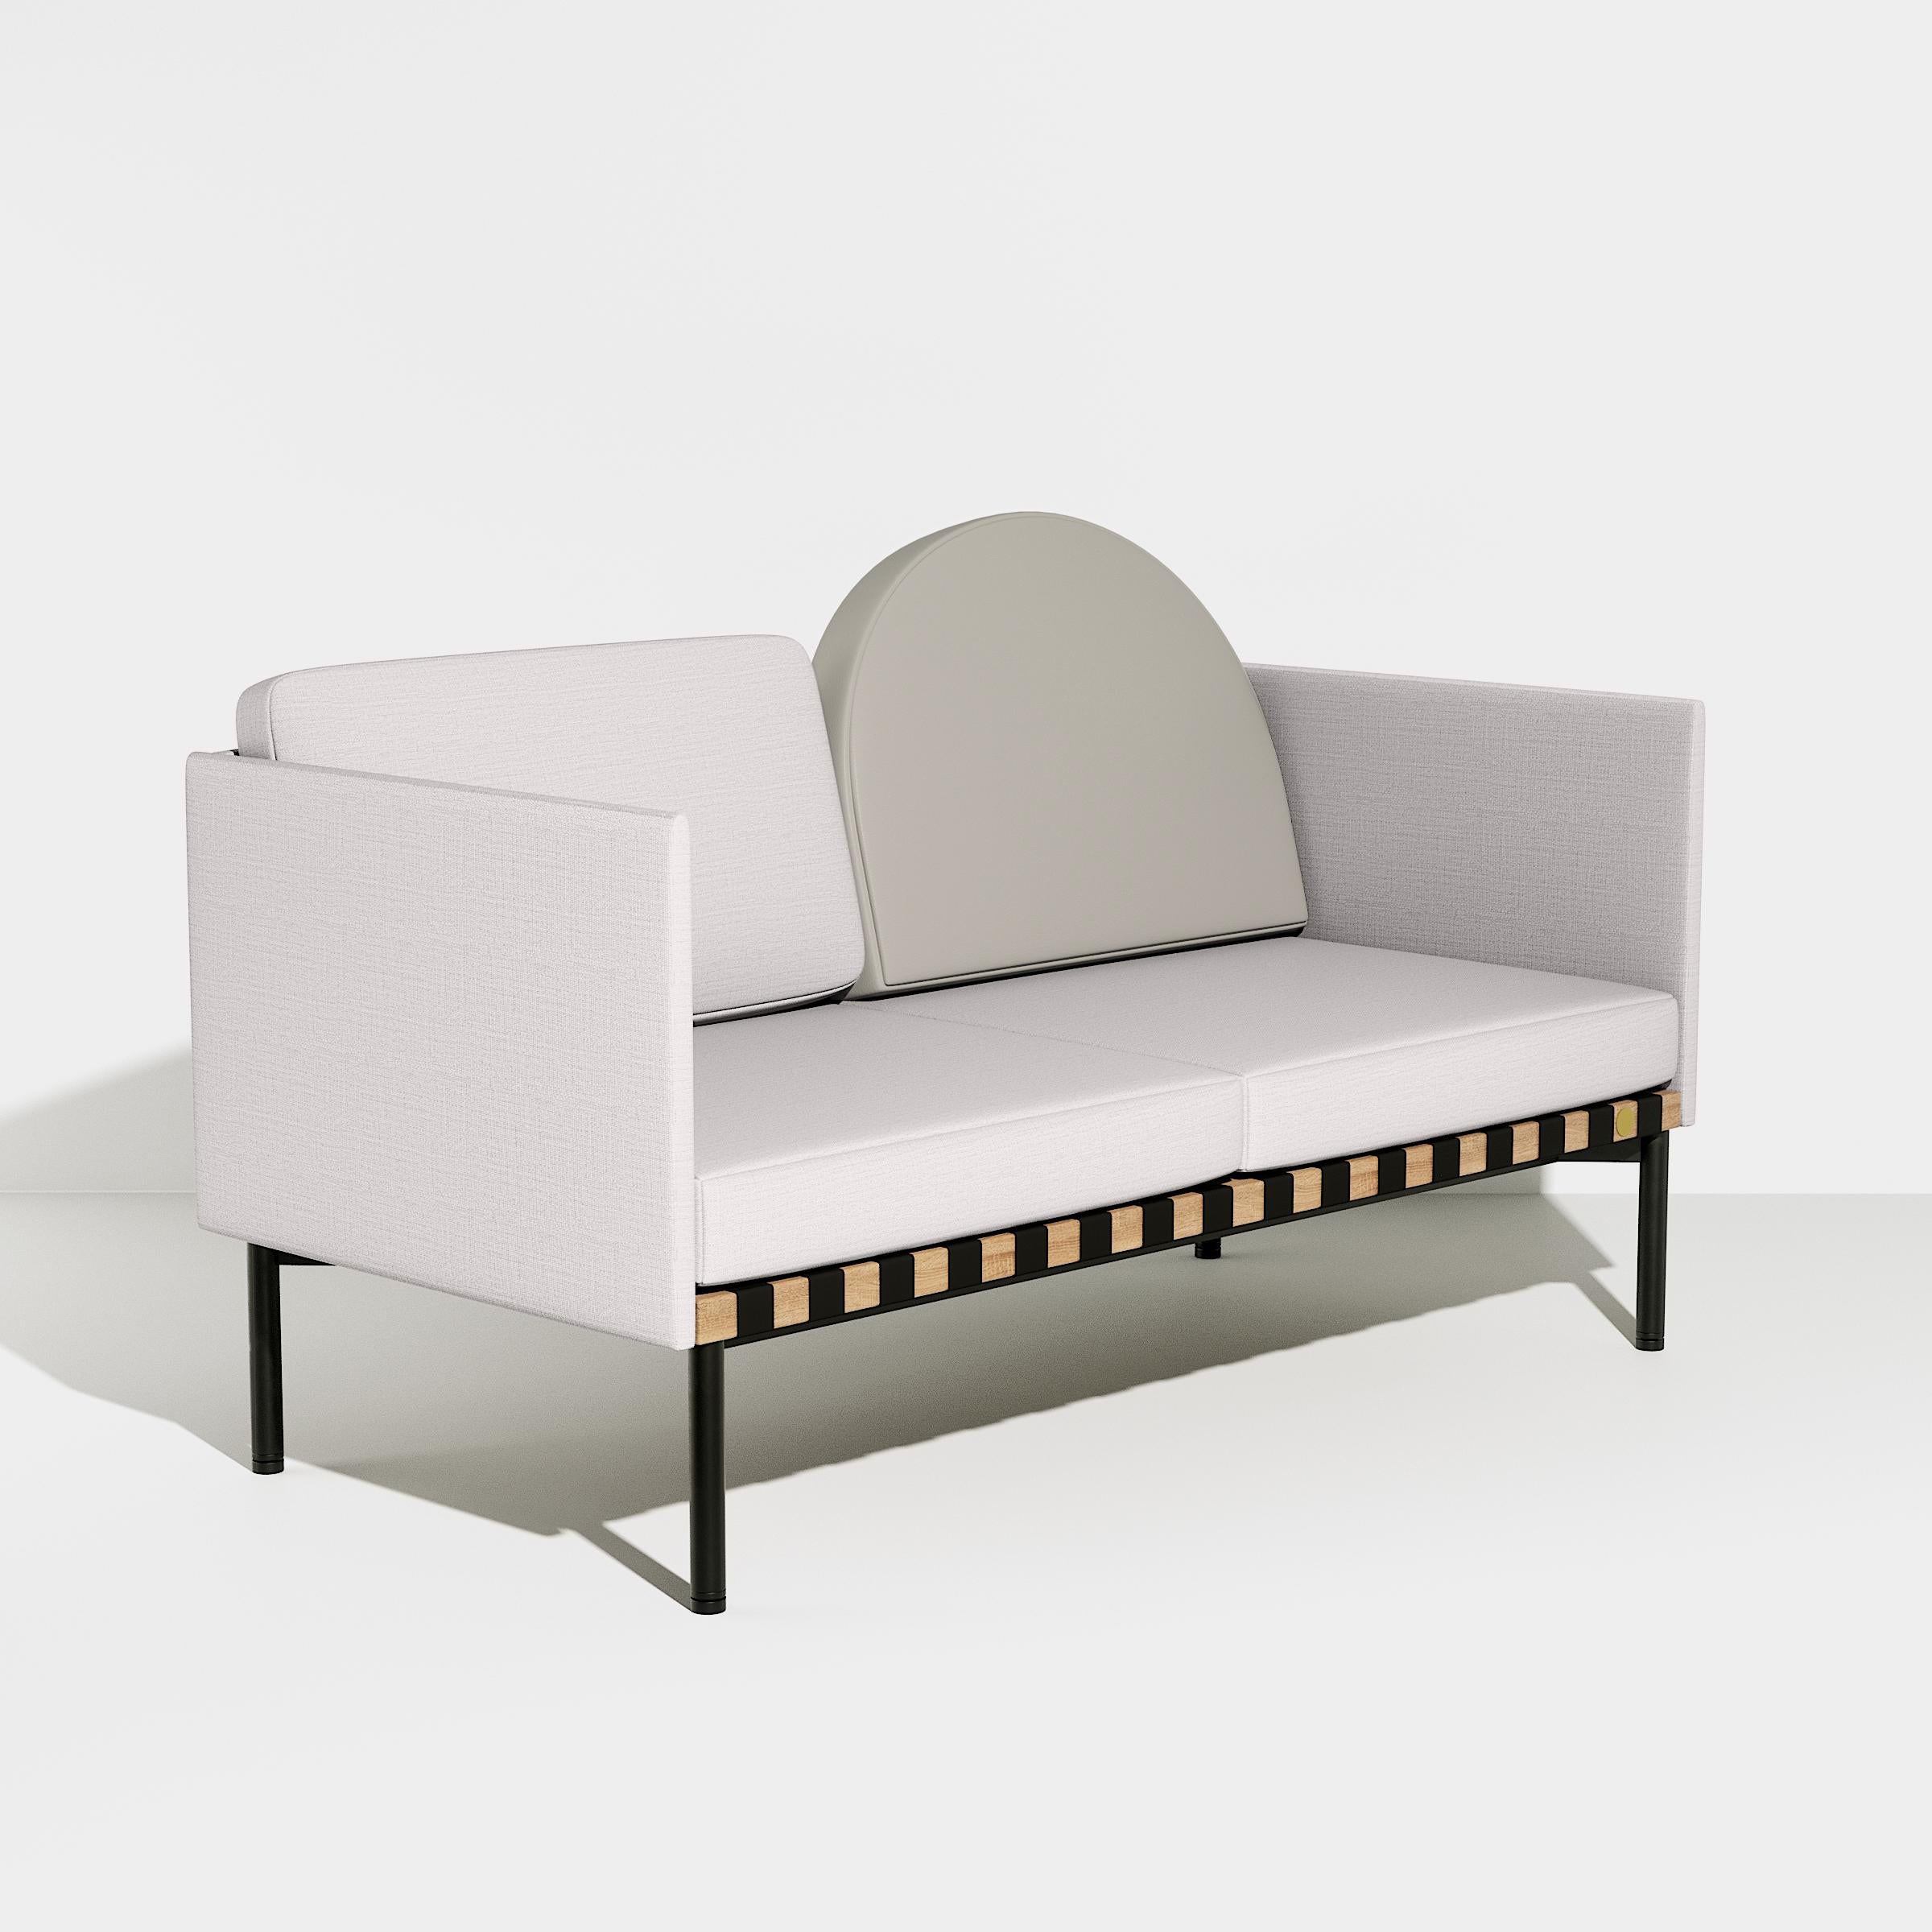 Petite Friture Grid 2-Sitzer Sofa mit Armlehne in Grau-Blau von Studio Pool, 2015

Pool hat die Grid-Kollektion in Anlehnung an den Bauhaus-Stil und zu Ehren der grafischen Talente entworfen. Jedes Element dieses vollständig modularen Systems behält